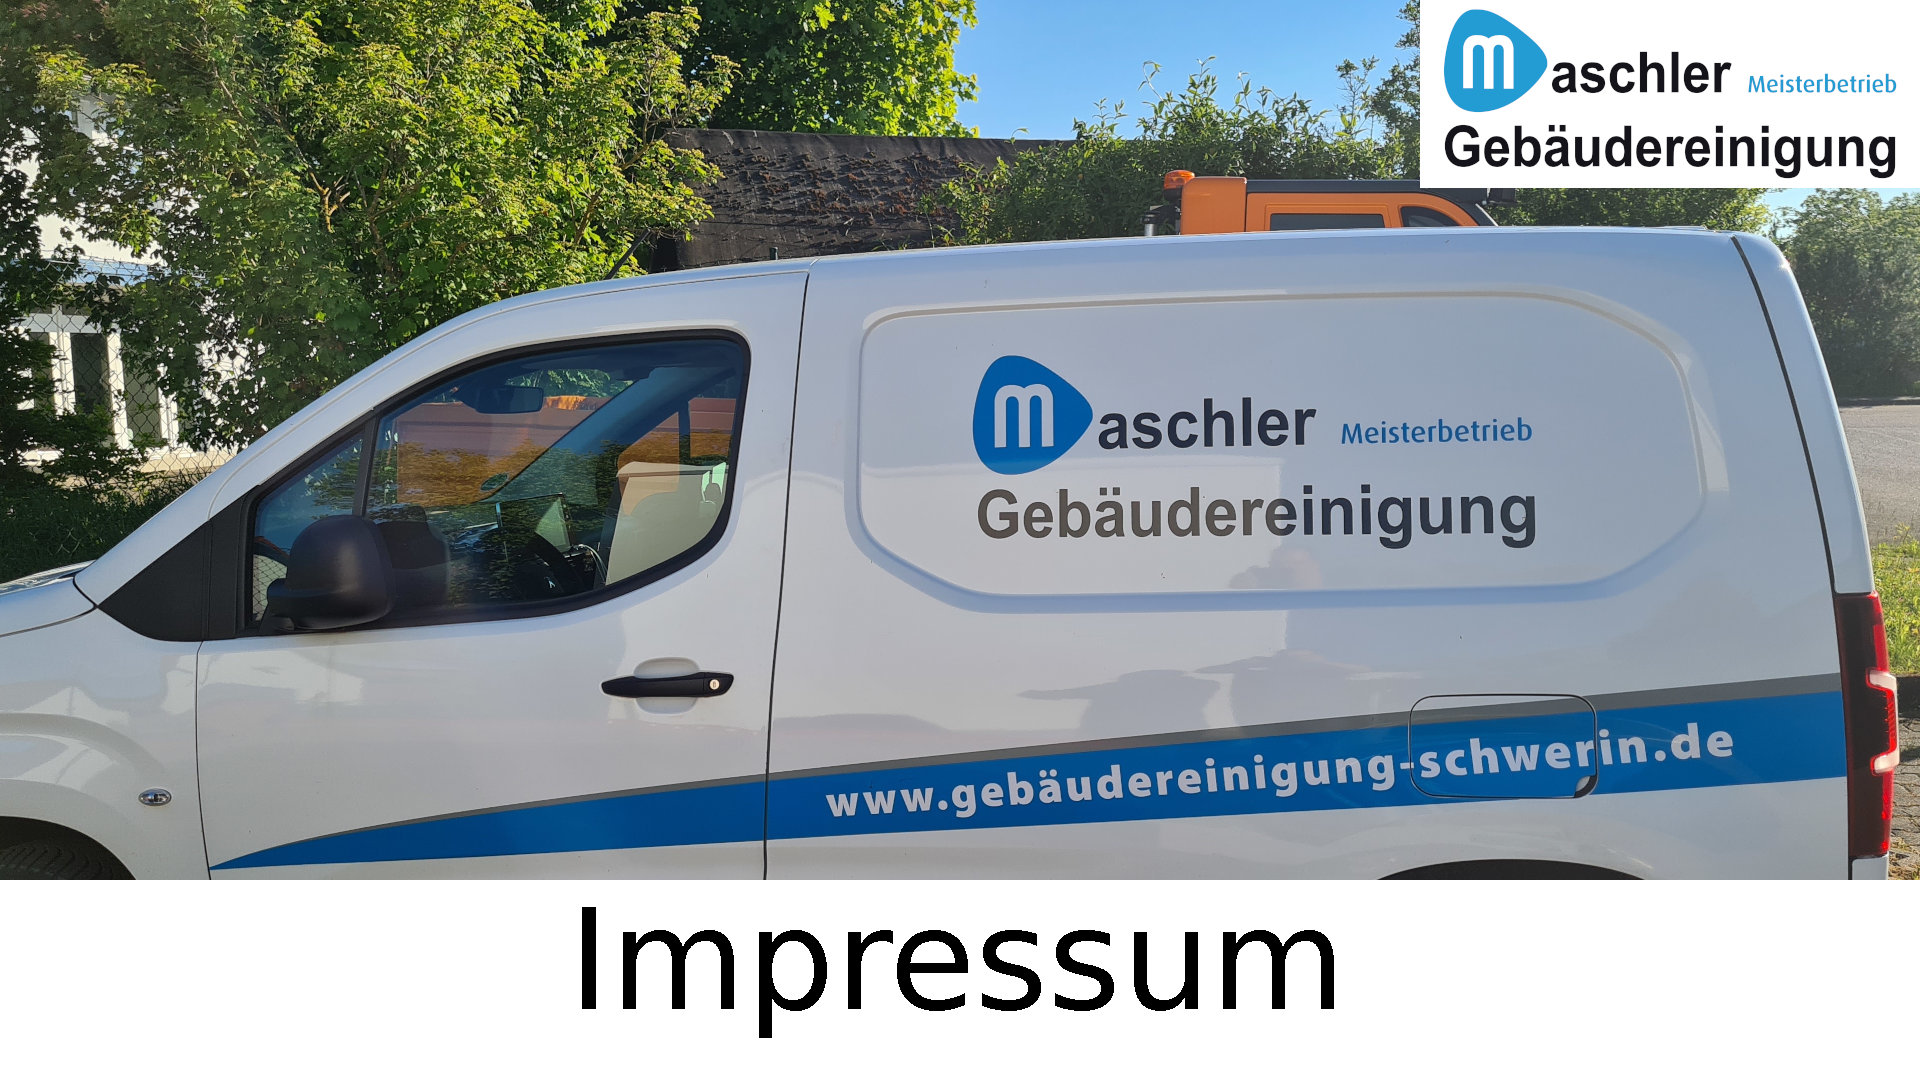 Impressum Gebäudereinigung Maschler GmbH Schwerin